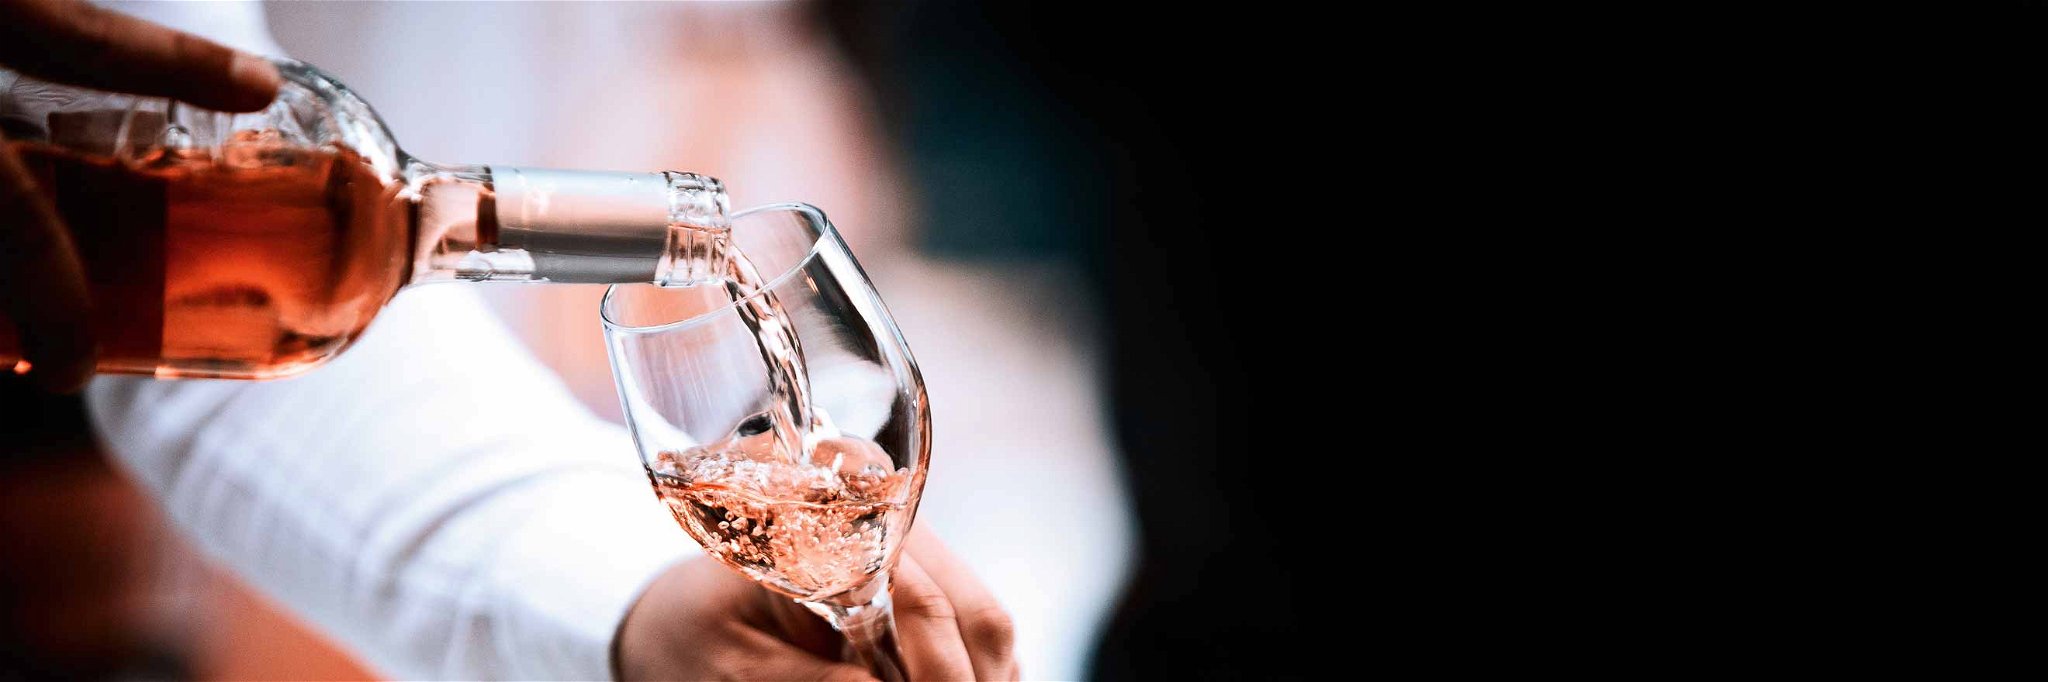 Mit den steigenden Temperaturen steigt auch die Lust auf Rosé im Glas.